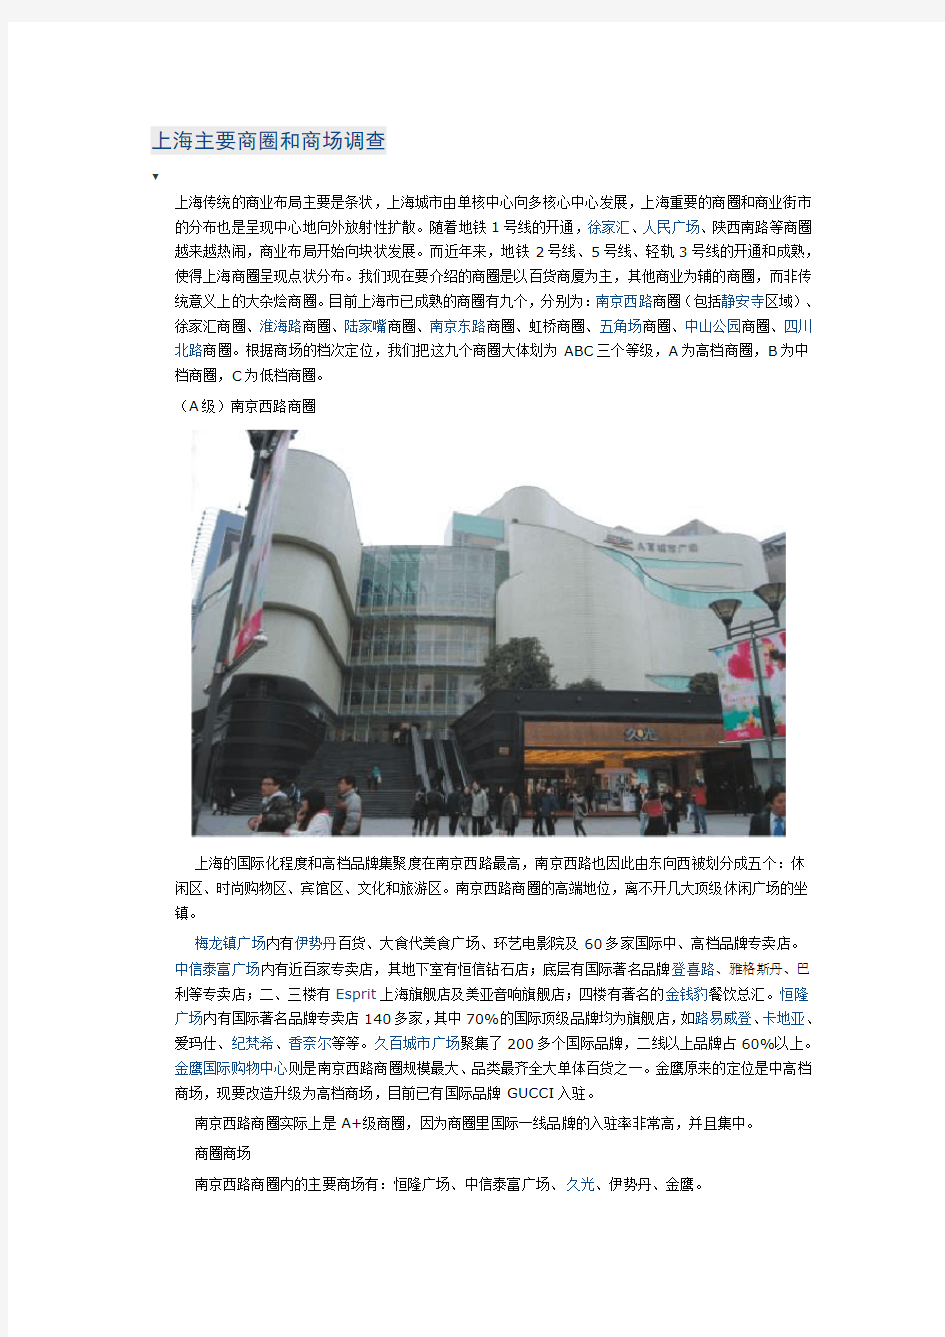 上海主要商圈和商场调查